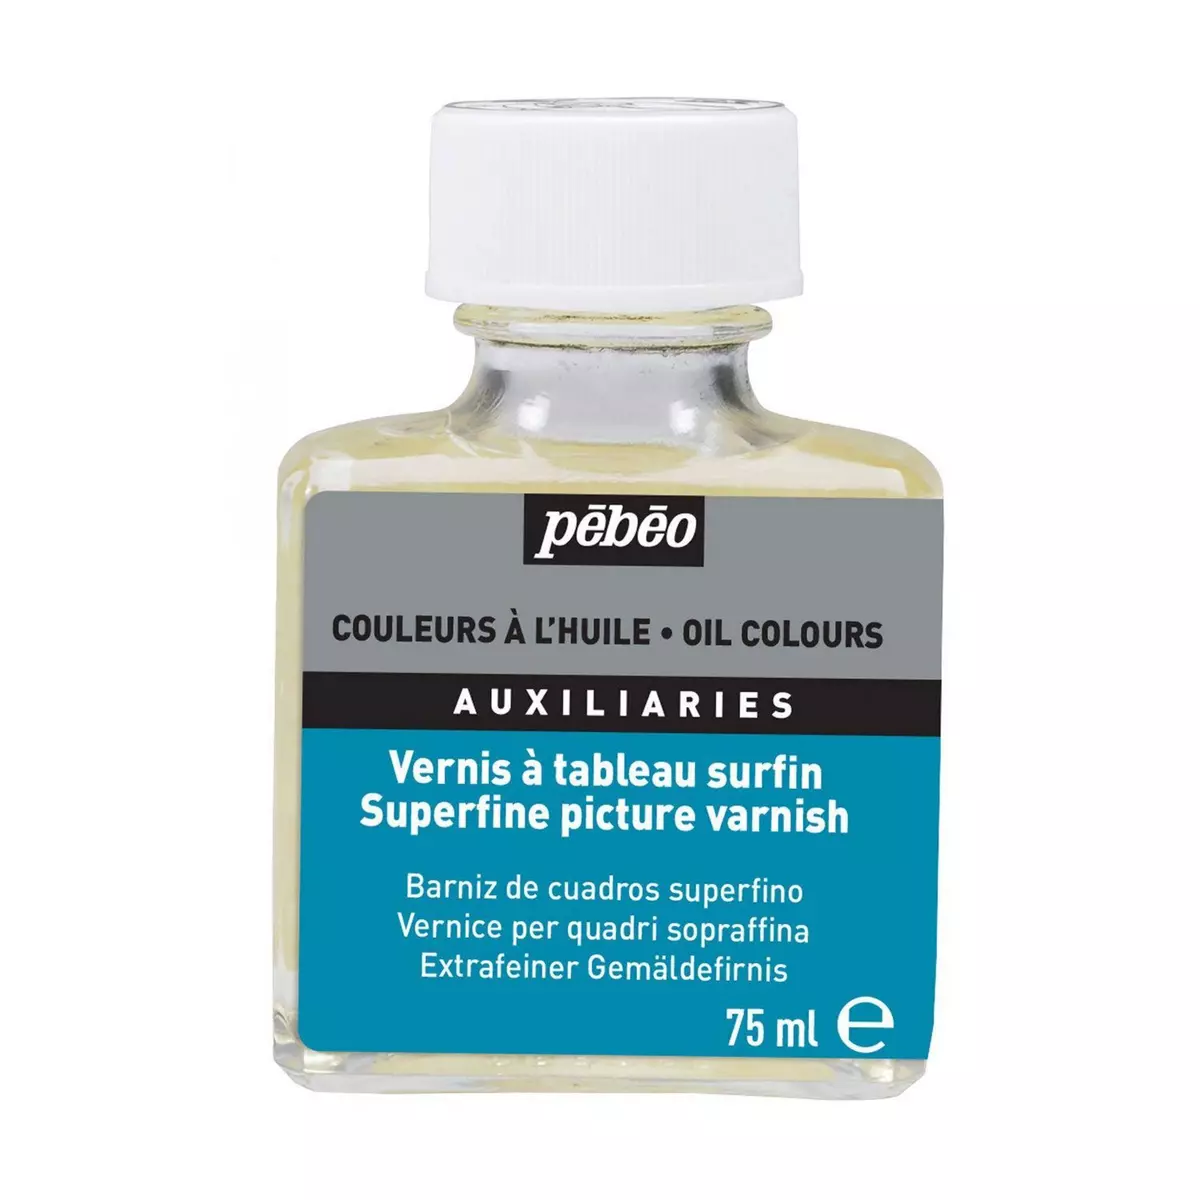 Pebeo Vernis à tableau surfin - 75 ml